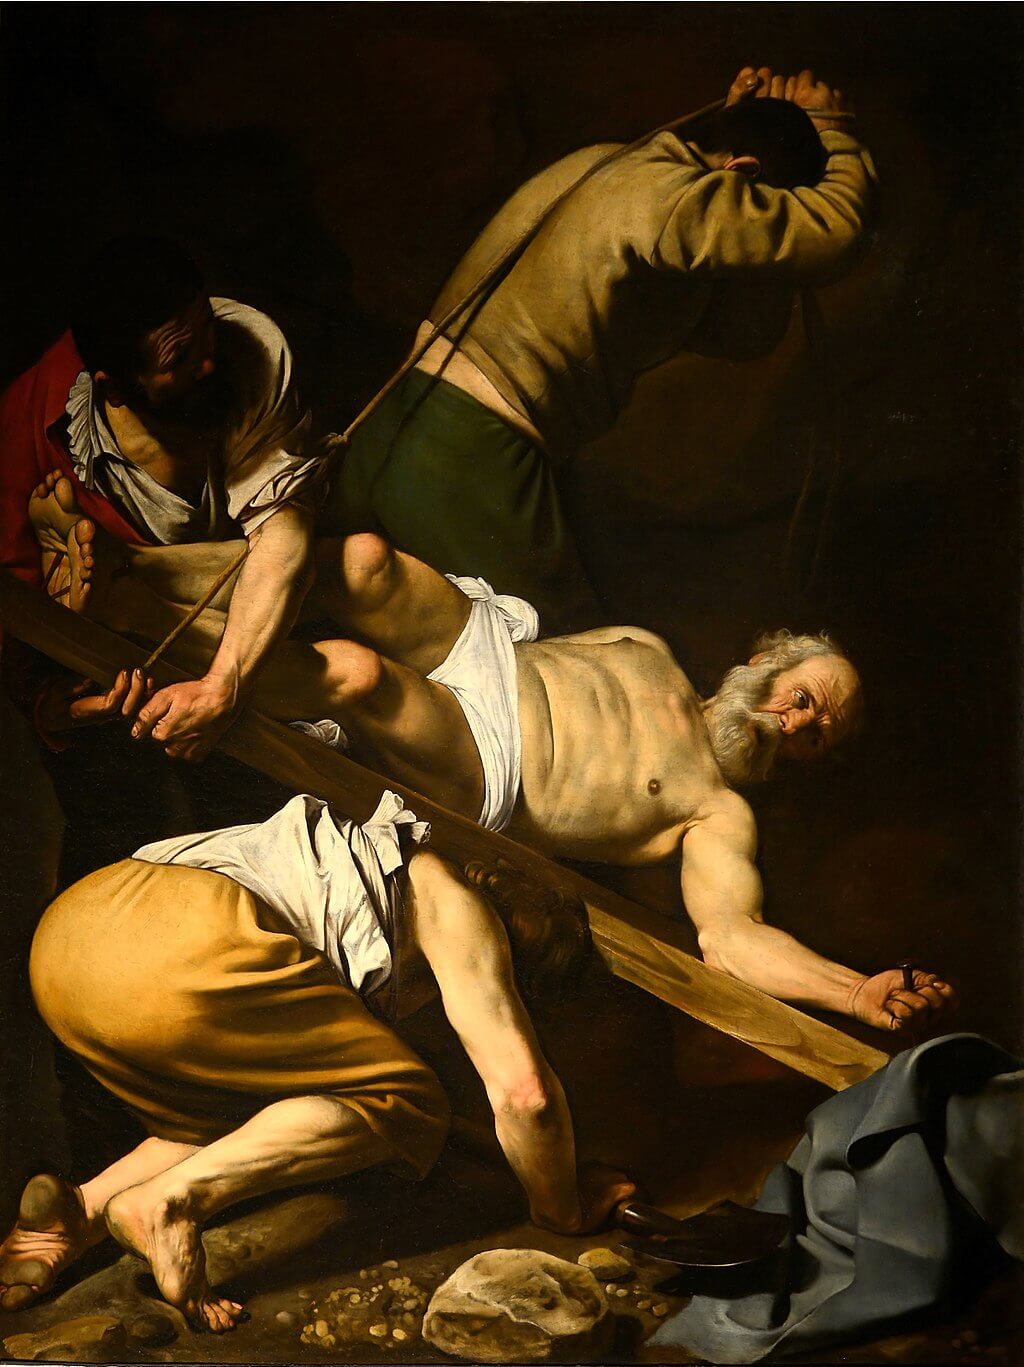 Crucifixion of Saint Peter by Caravaggio in the Basilica of Santa Maria del Popolo in Rome